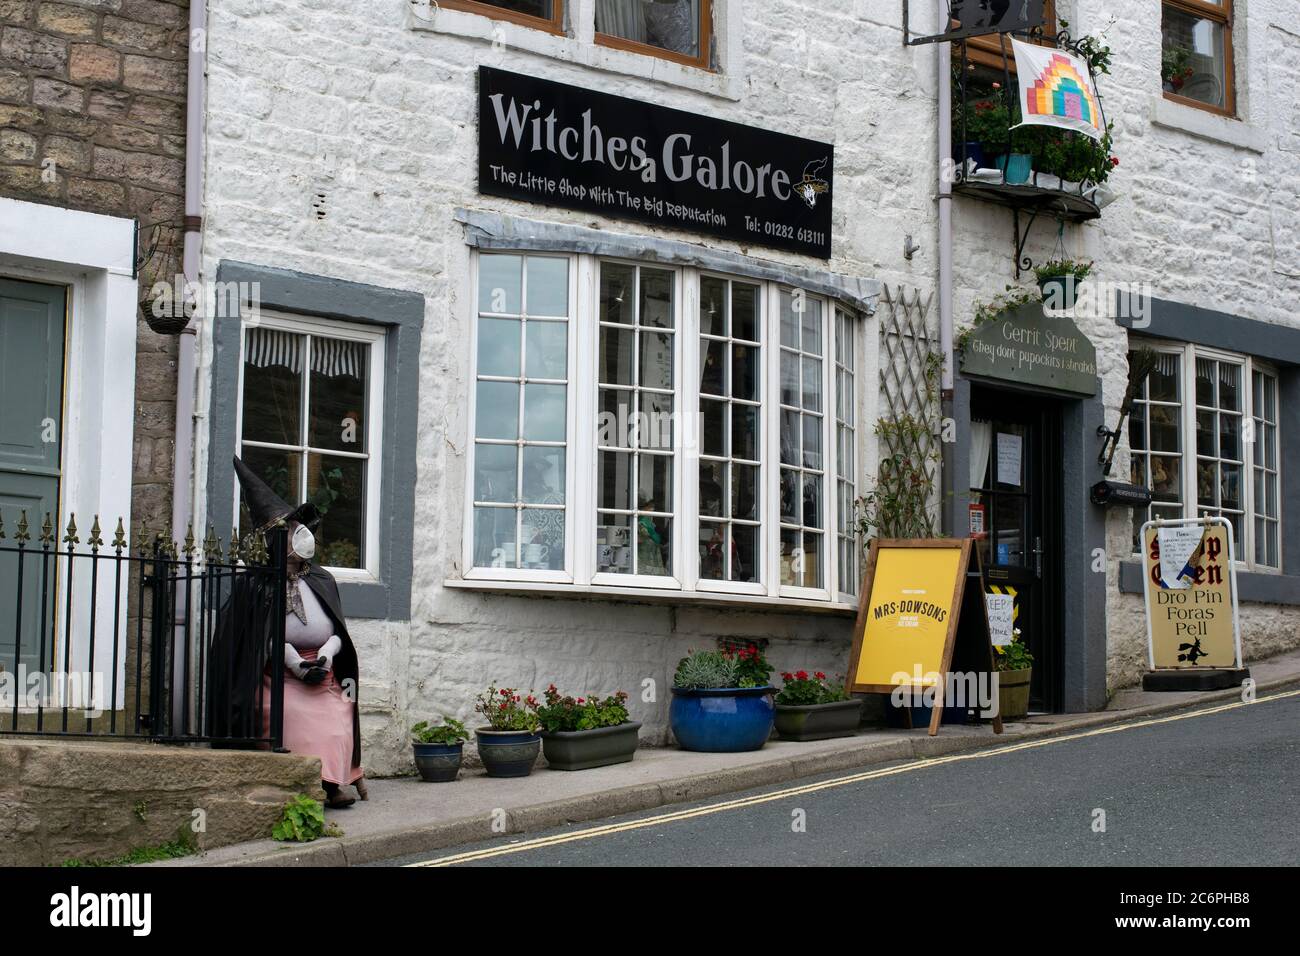 Witches Galore occulta shop, Newchurch, Pendle, Regno Unito Foto Stock